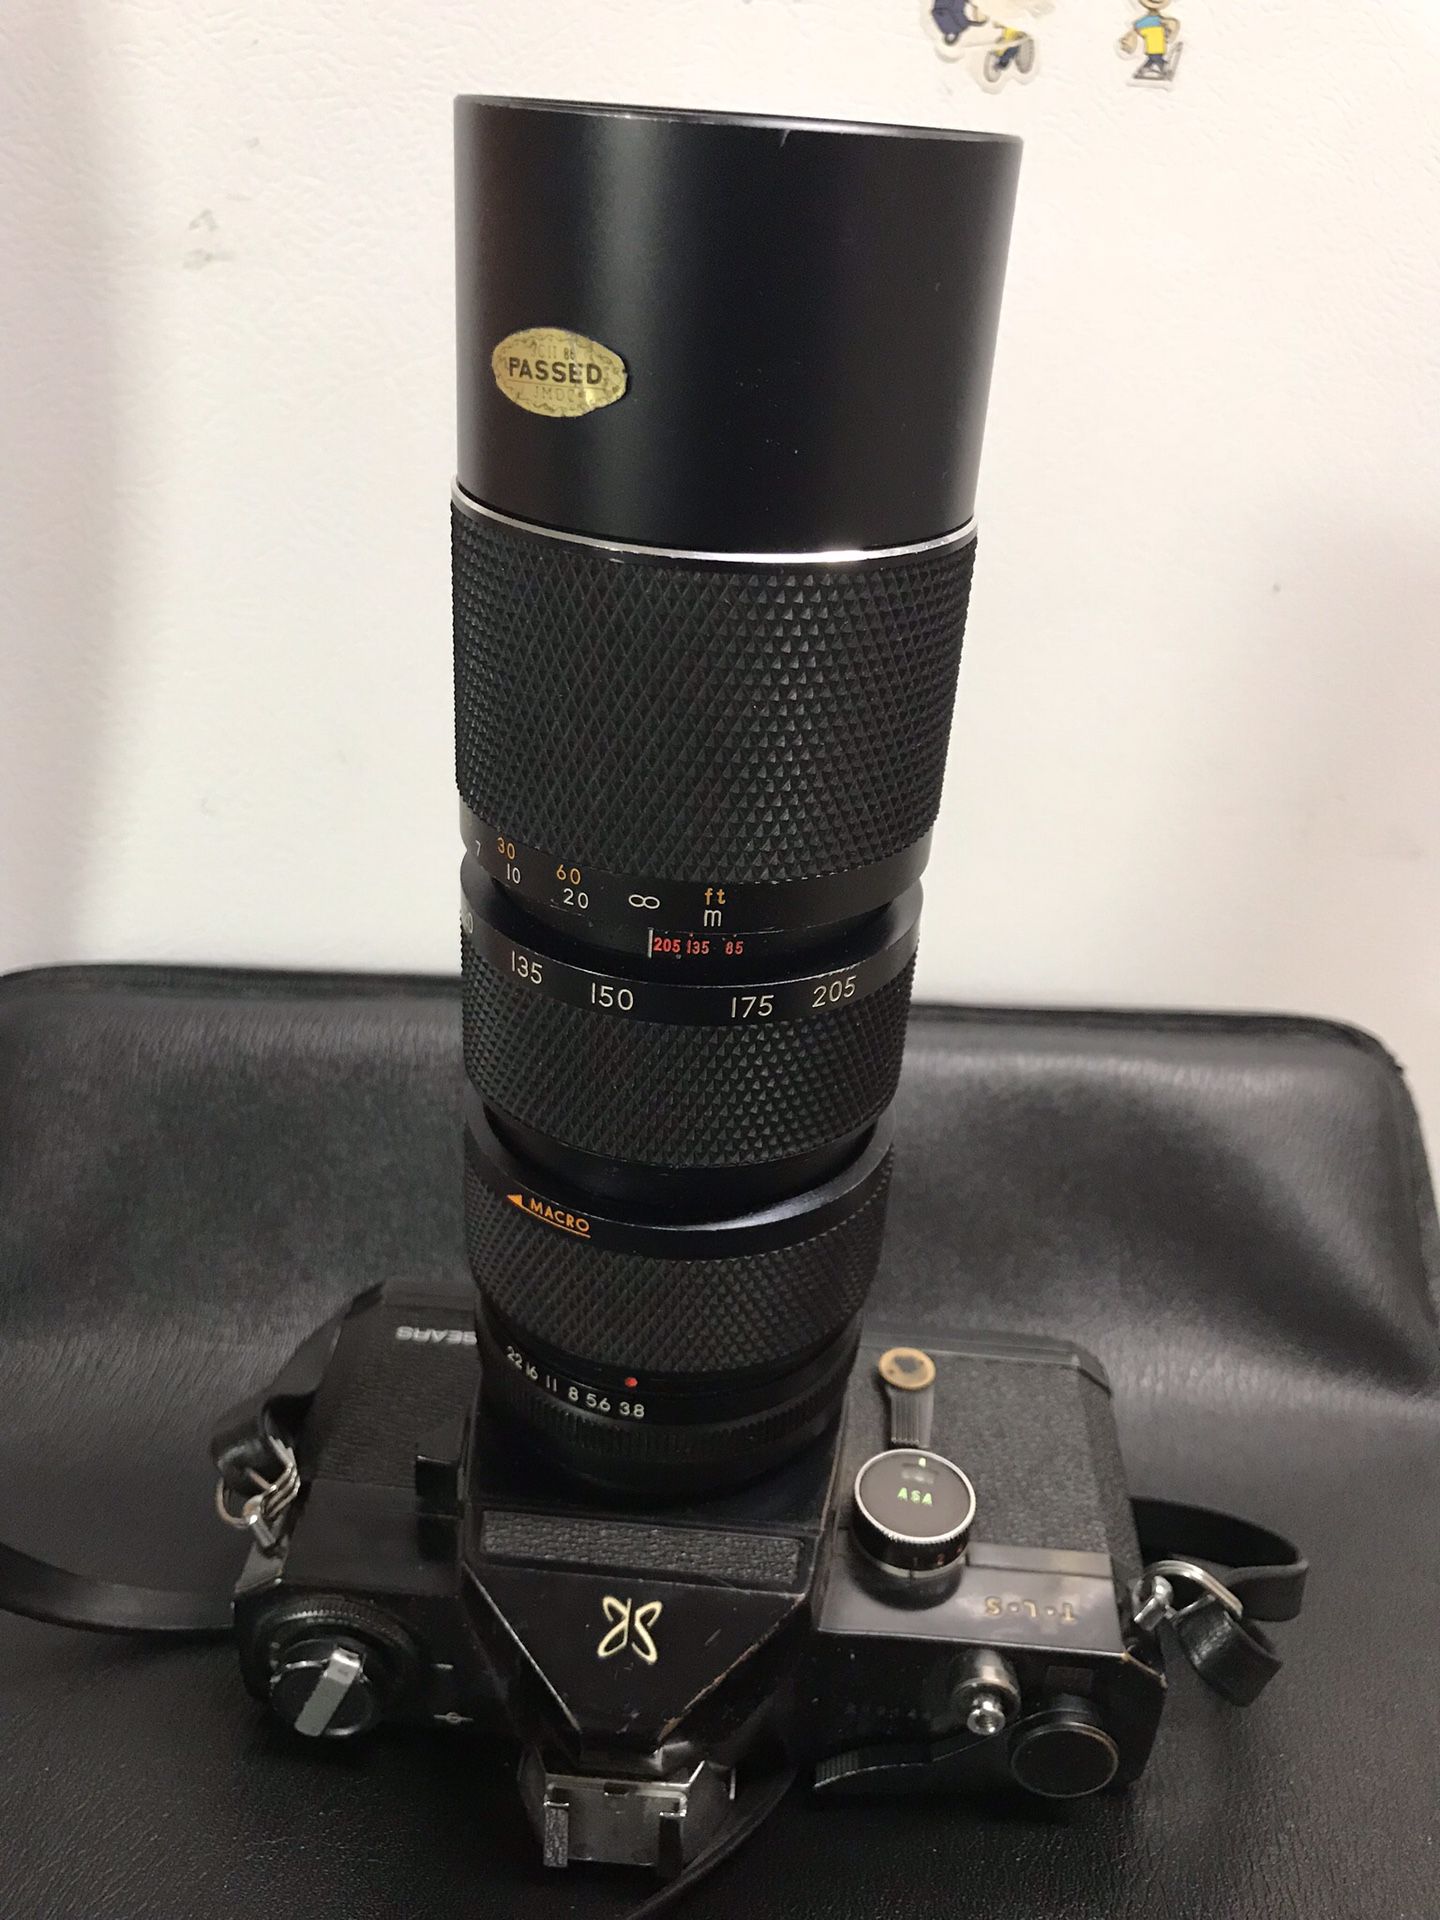 Sears TLS Film Camera & 85mm-205mm Lens